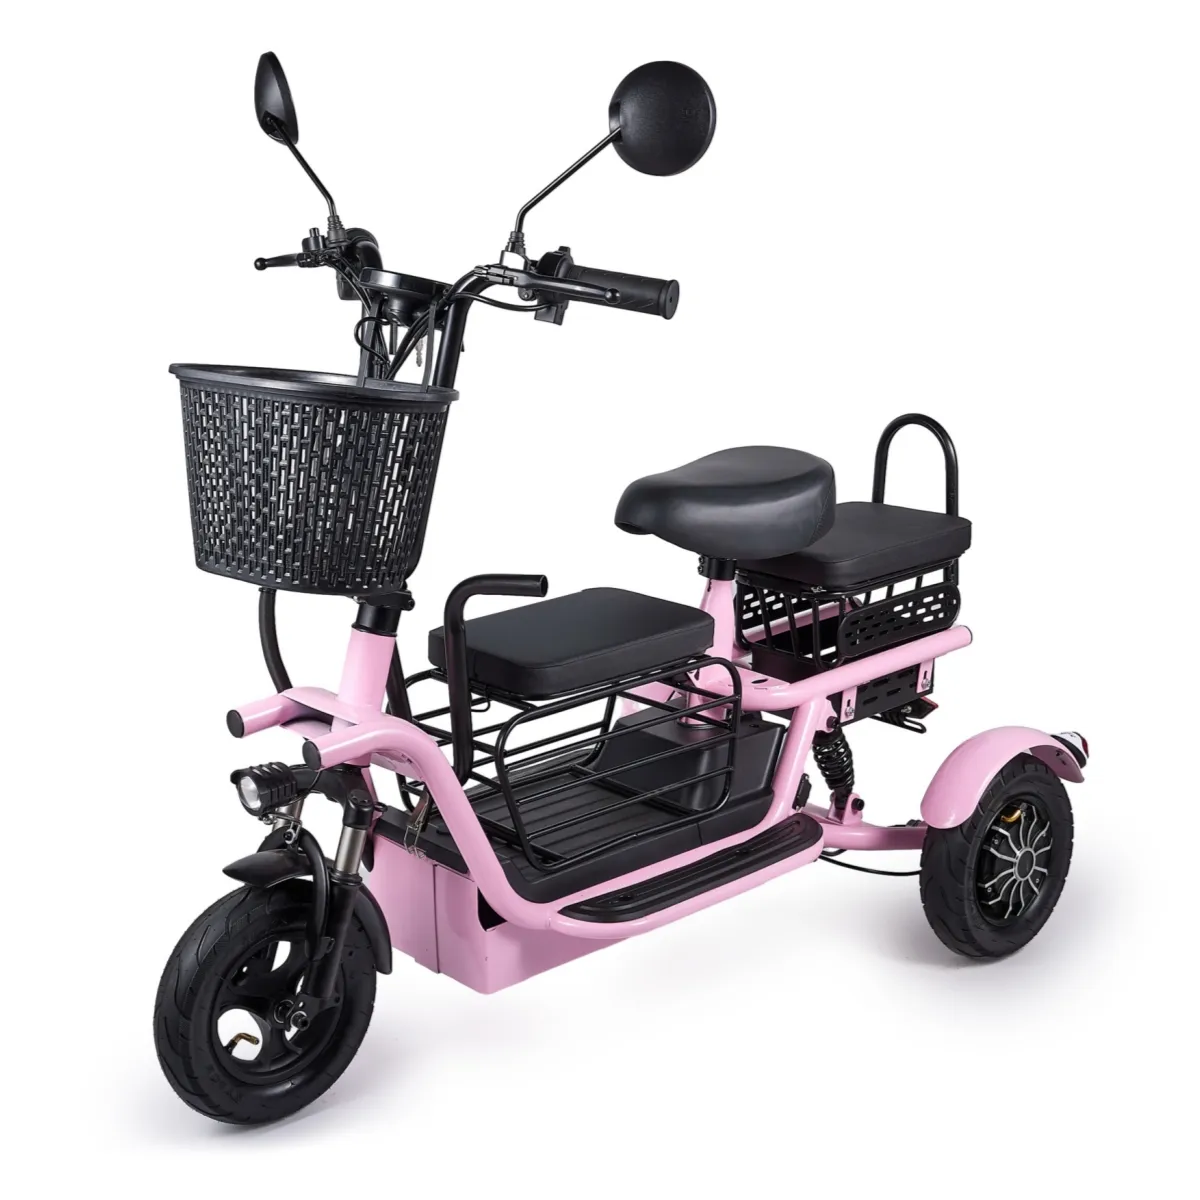 دراجة بخارية كهربائية بثلاث عجلات صغيرة متنقلة للأطفال، سكوتر كهربائي 3 عجلات للأبوين والأطفال